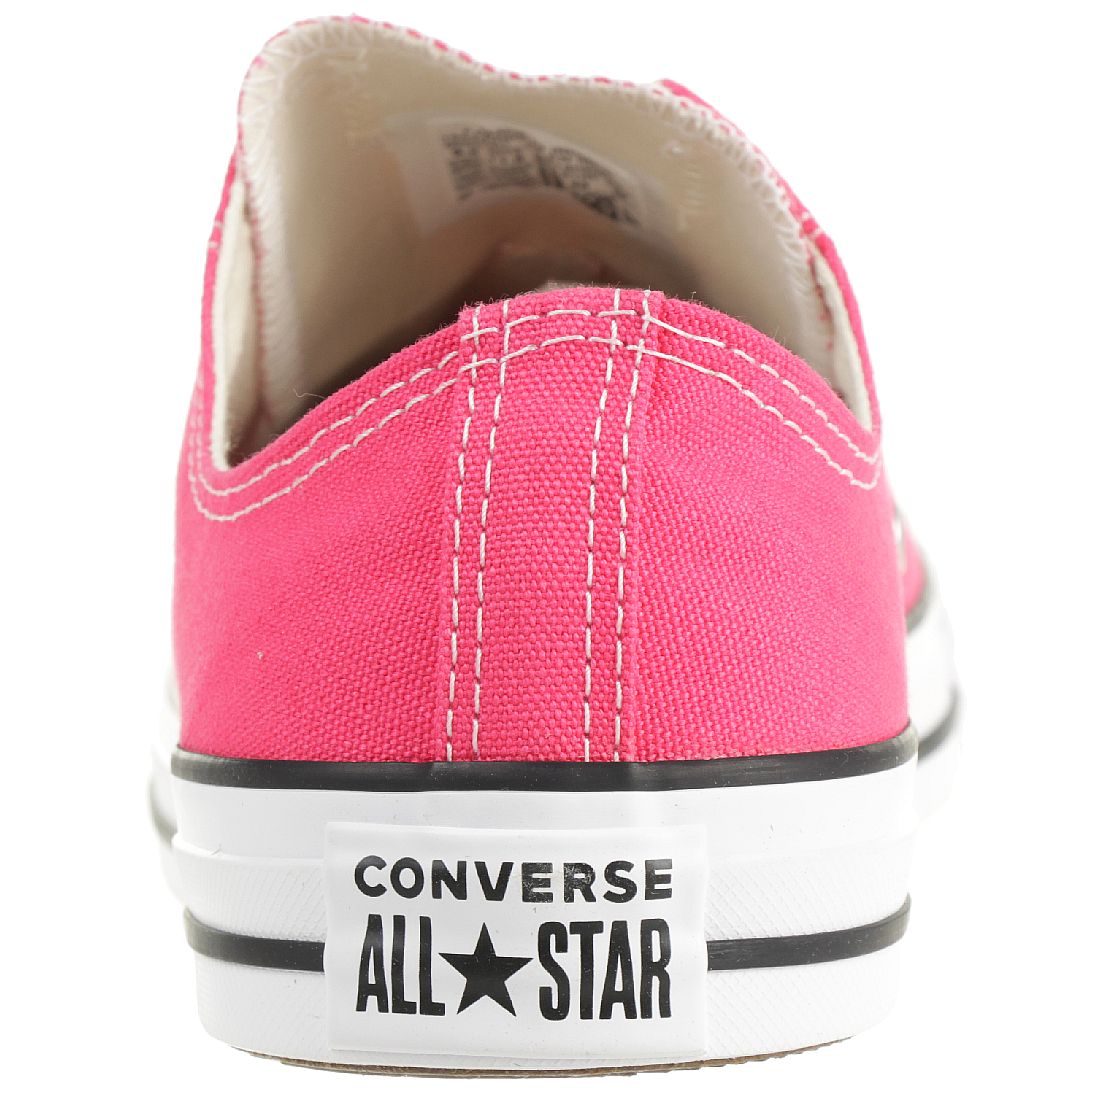 Converse CTAS OX Chuck Schuhe Textil Sneaker pink 164294C